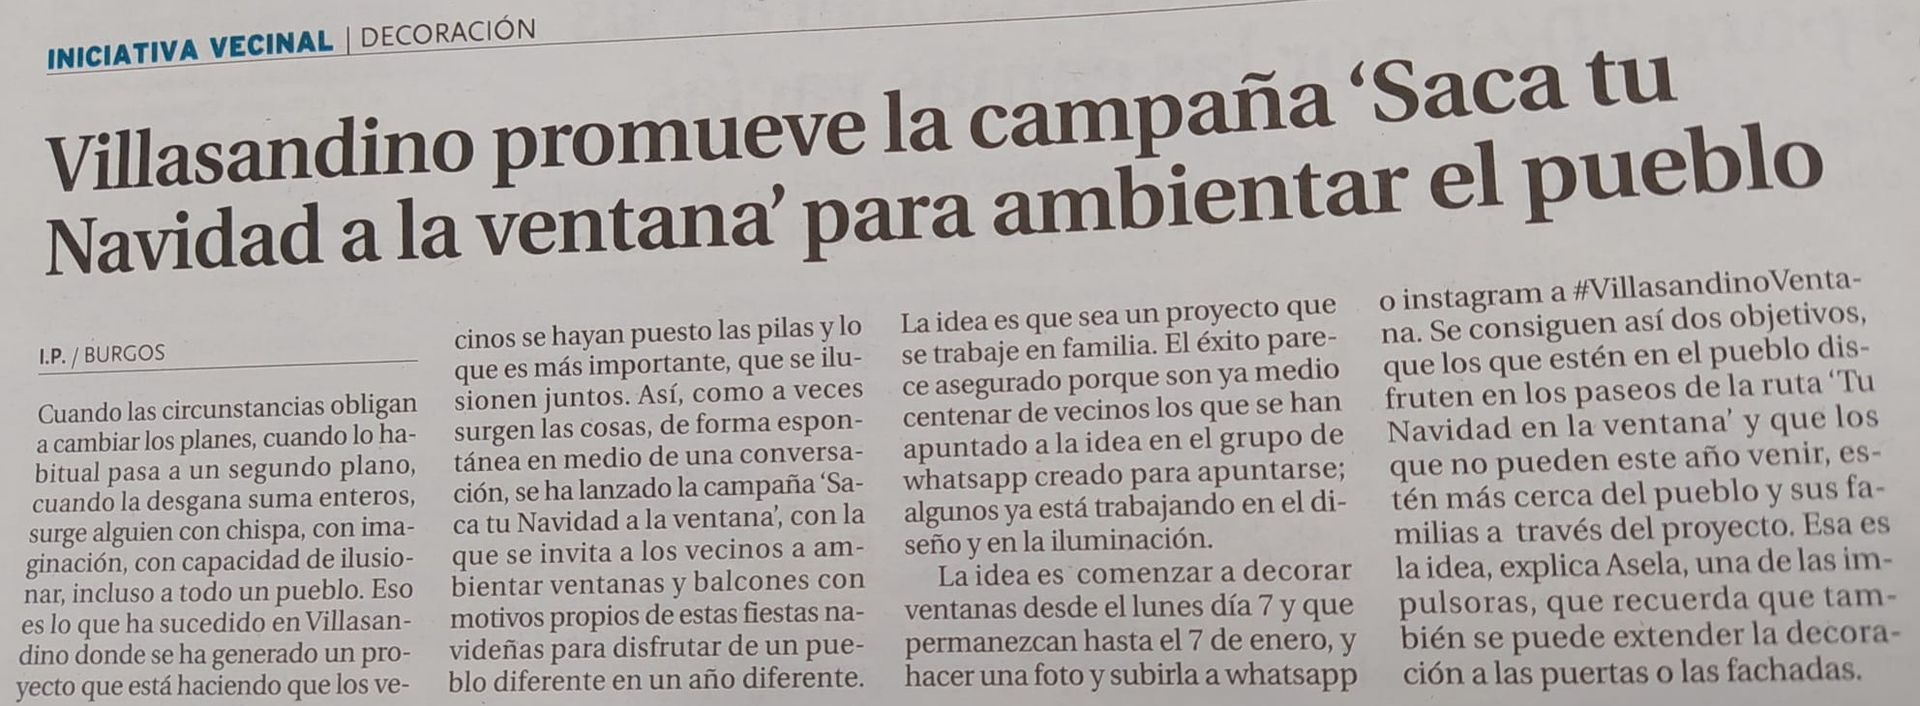 Foto de la mención en El Diario de Burgos